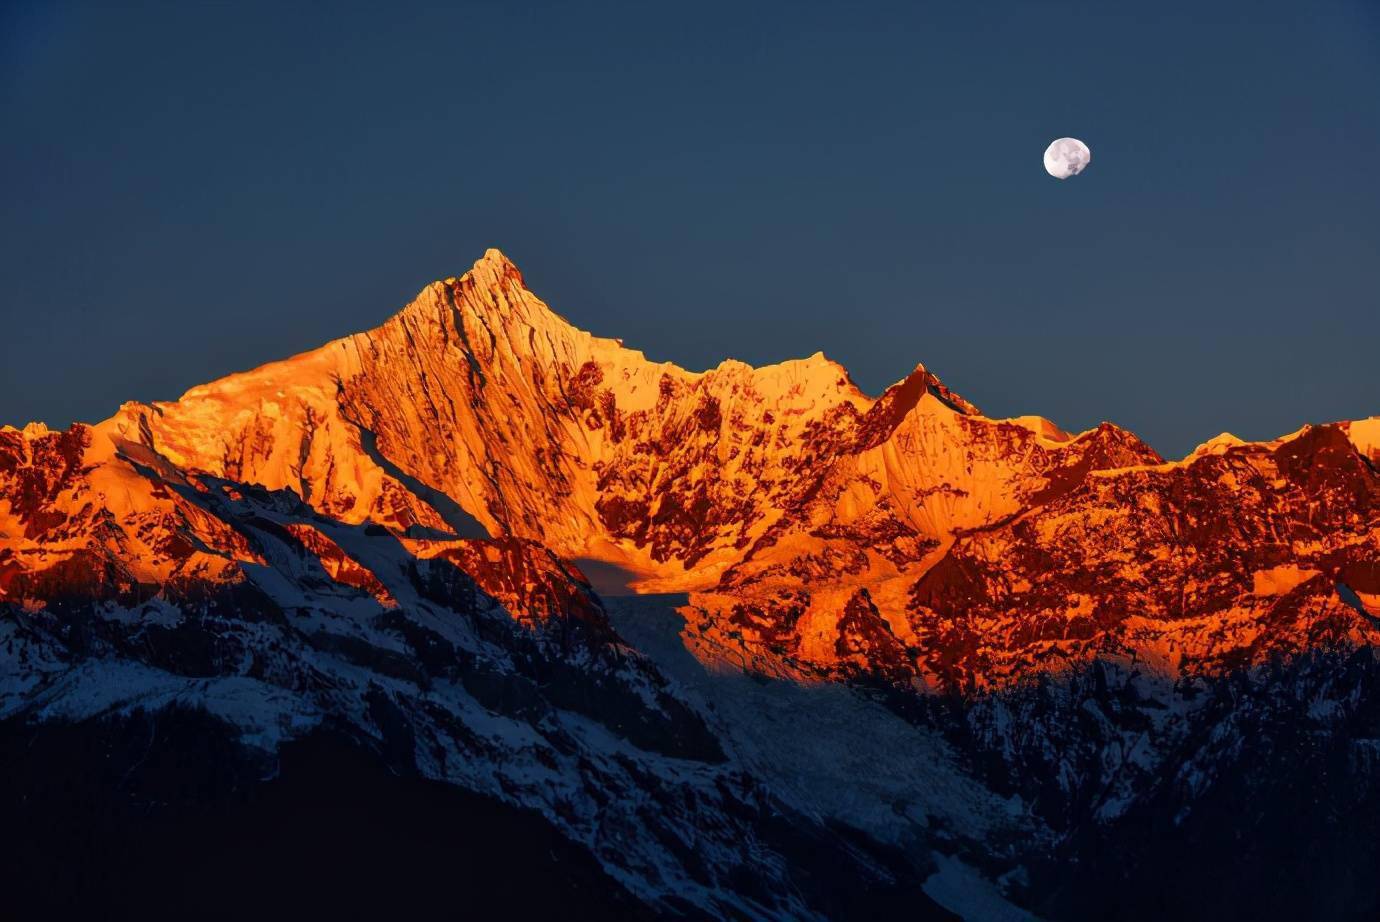 云南省卡瓦格博峰,是全世界公认最美丽雪山,被誉为雪山之神